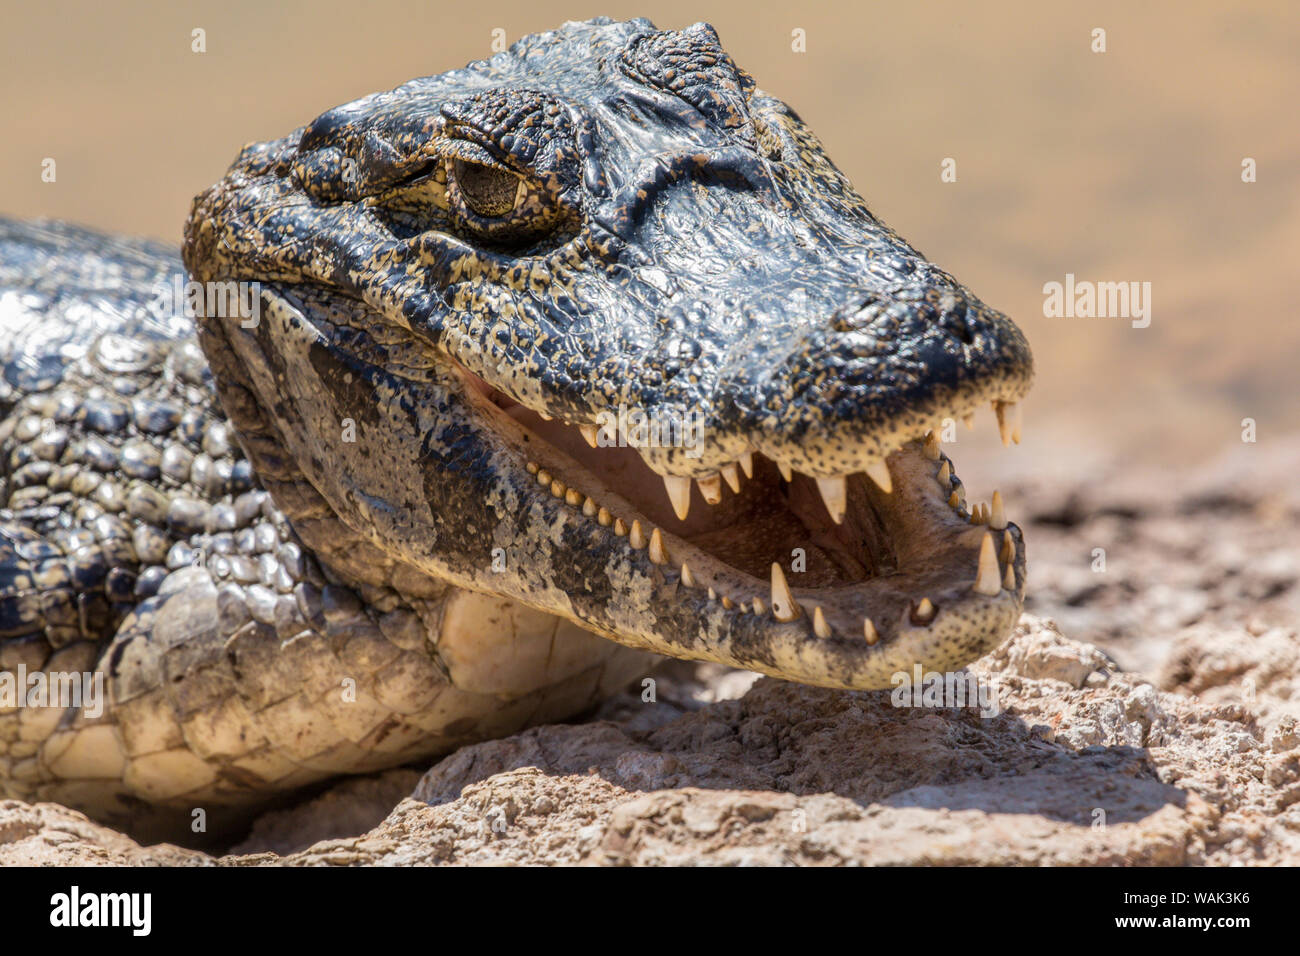 Pantanal, Mato Grosso, Brasil. Caiman yacare asoleándose en sí a lo largo de la orilla del río. Para refrescarse, abren sus bocas en un proceso que se llama 'mouth gaping', que se parece mucho a Panting. Foto de stock